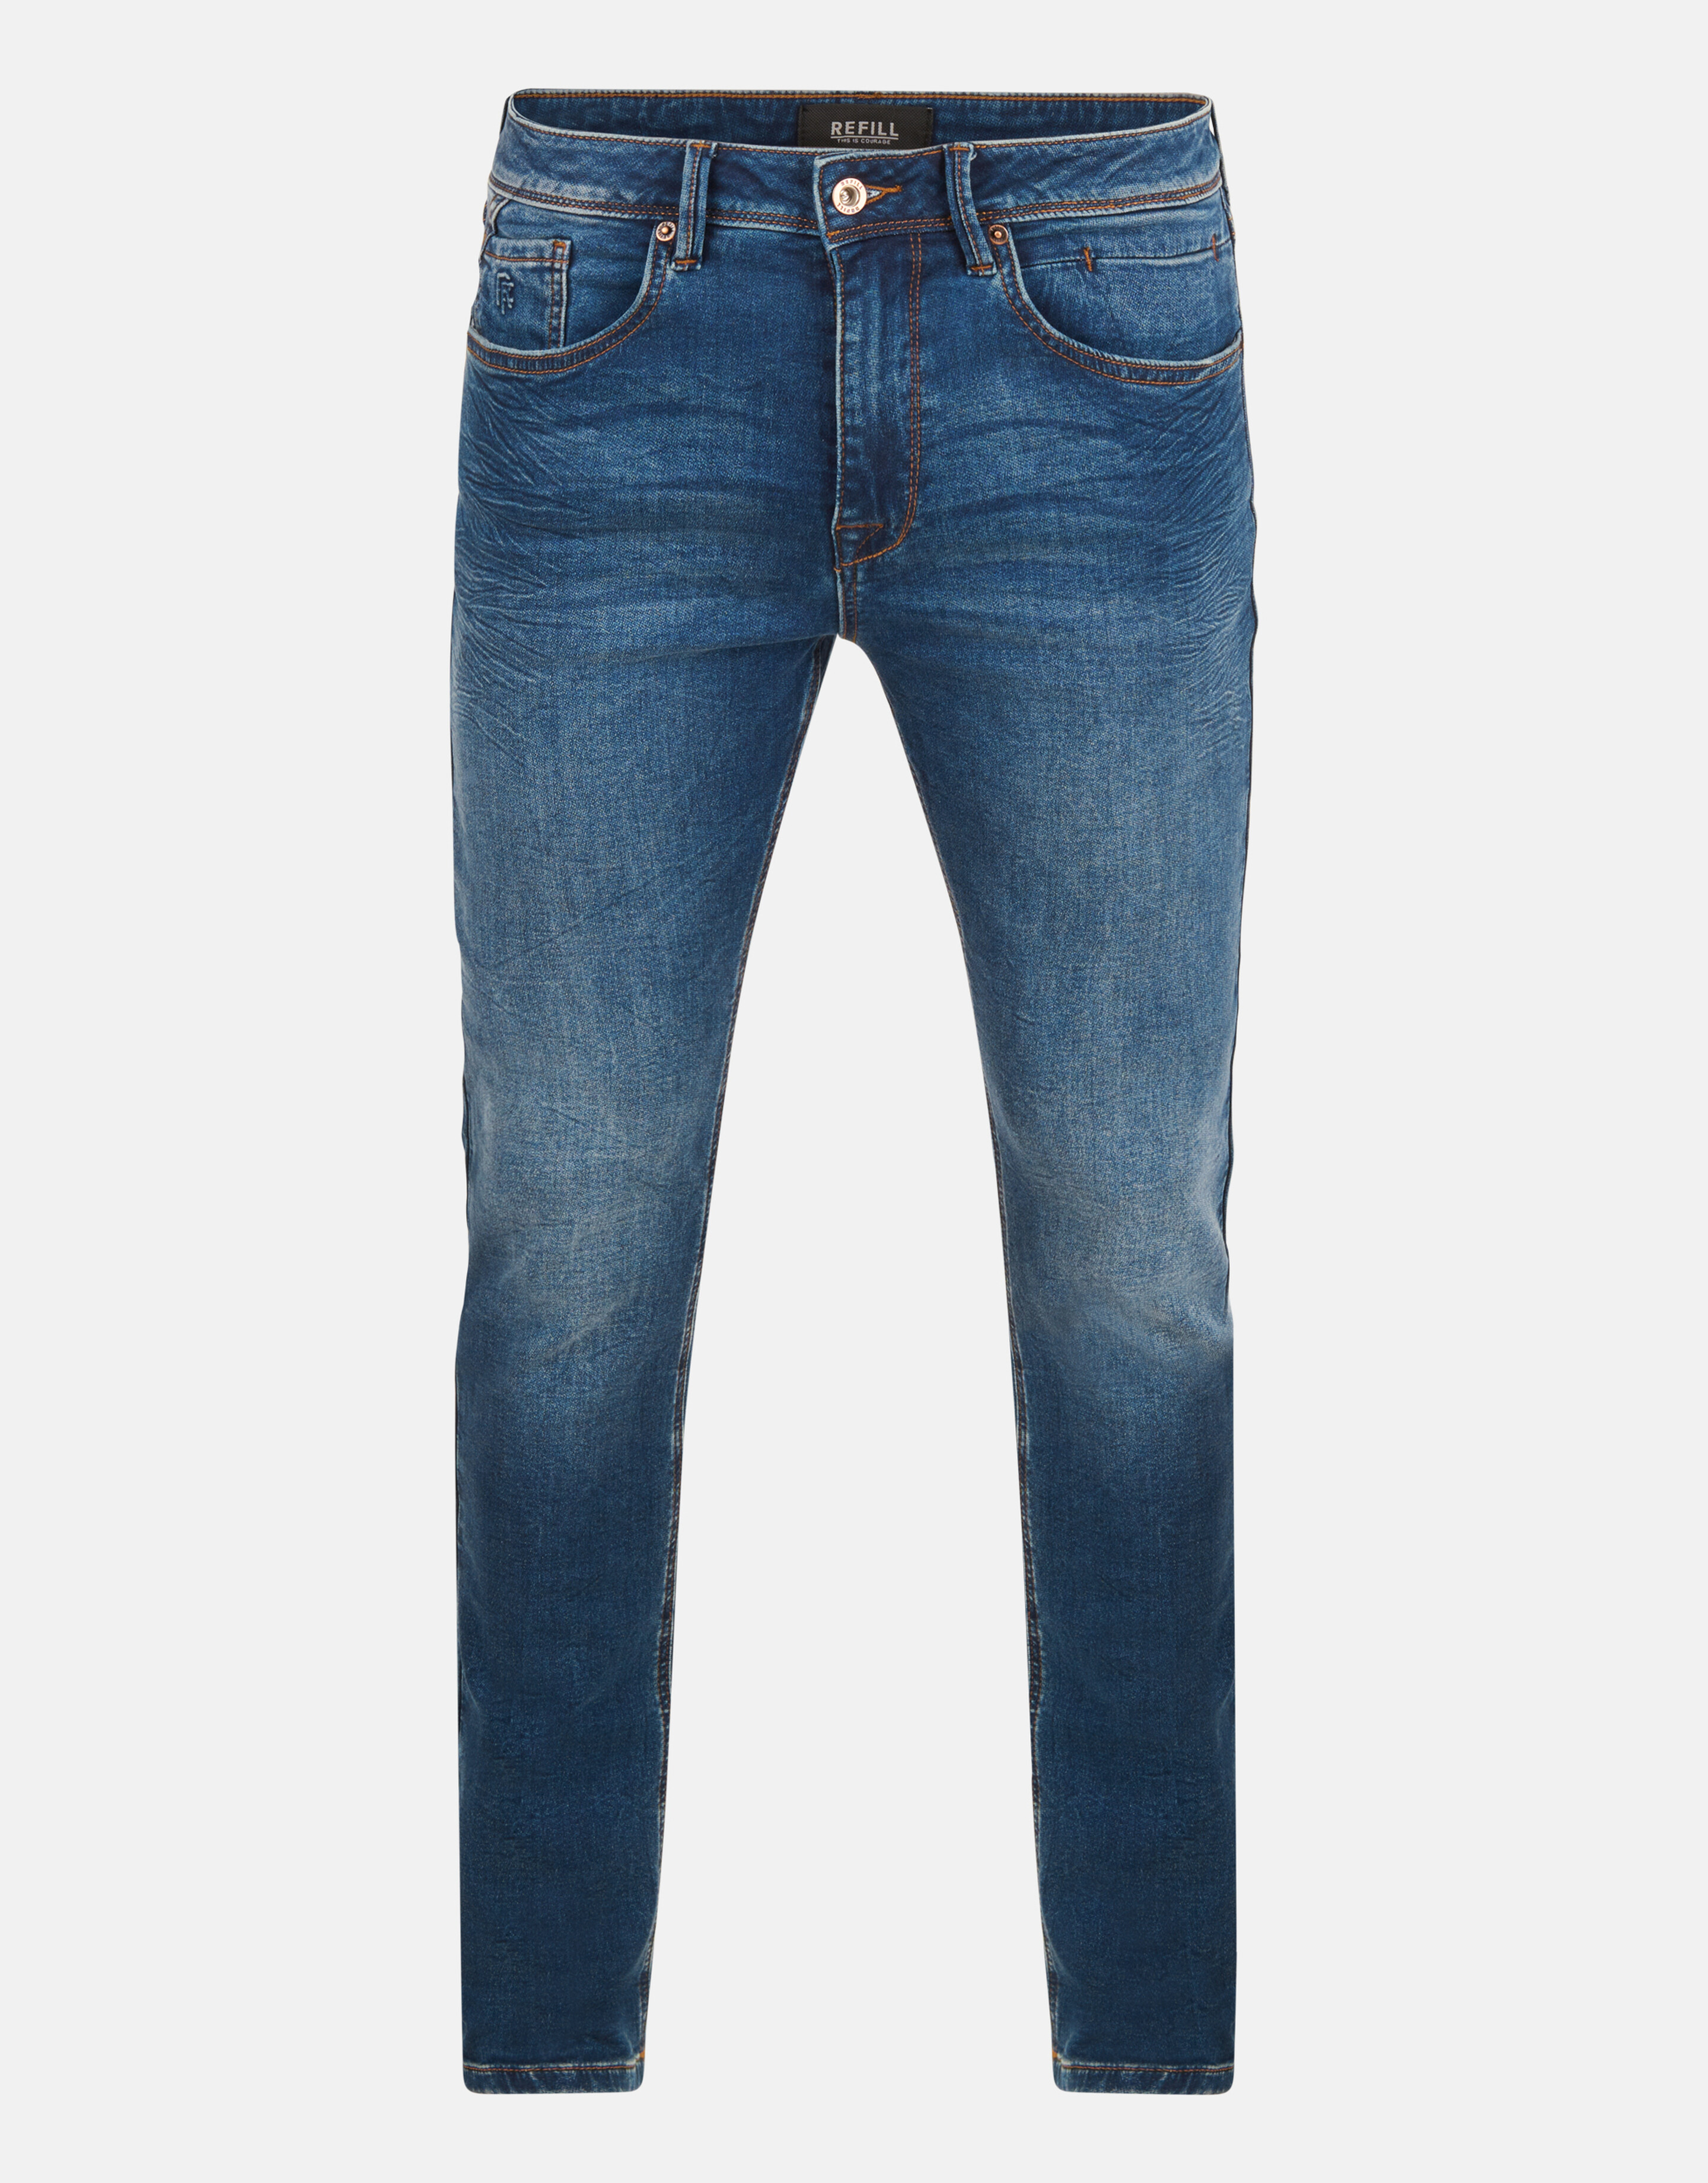 Slim Fit Jeans L36 Refill